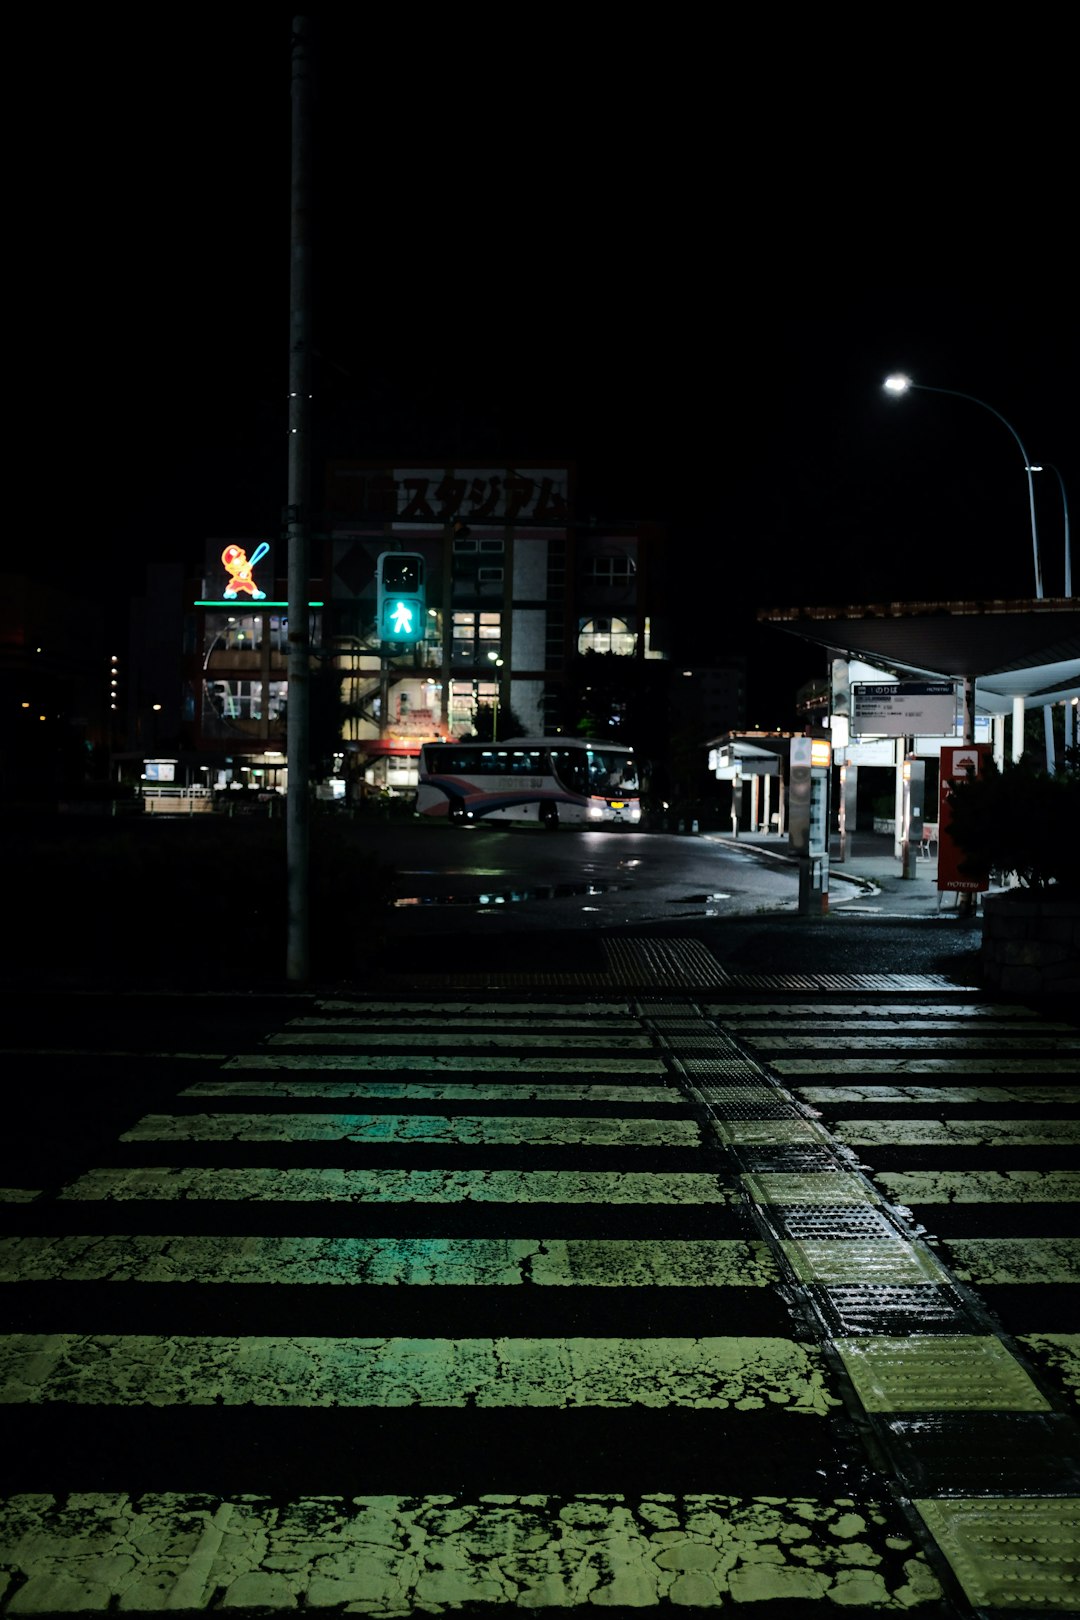 pedestrian lane during night time